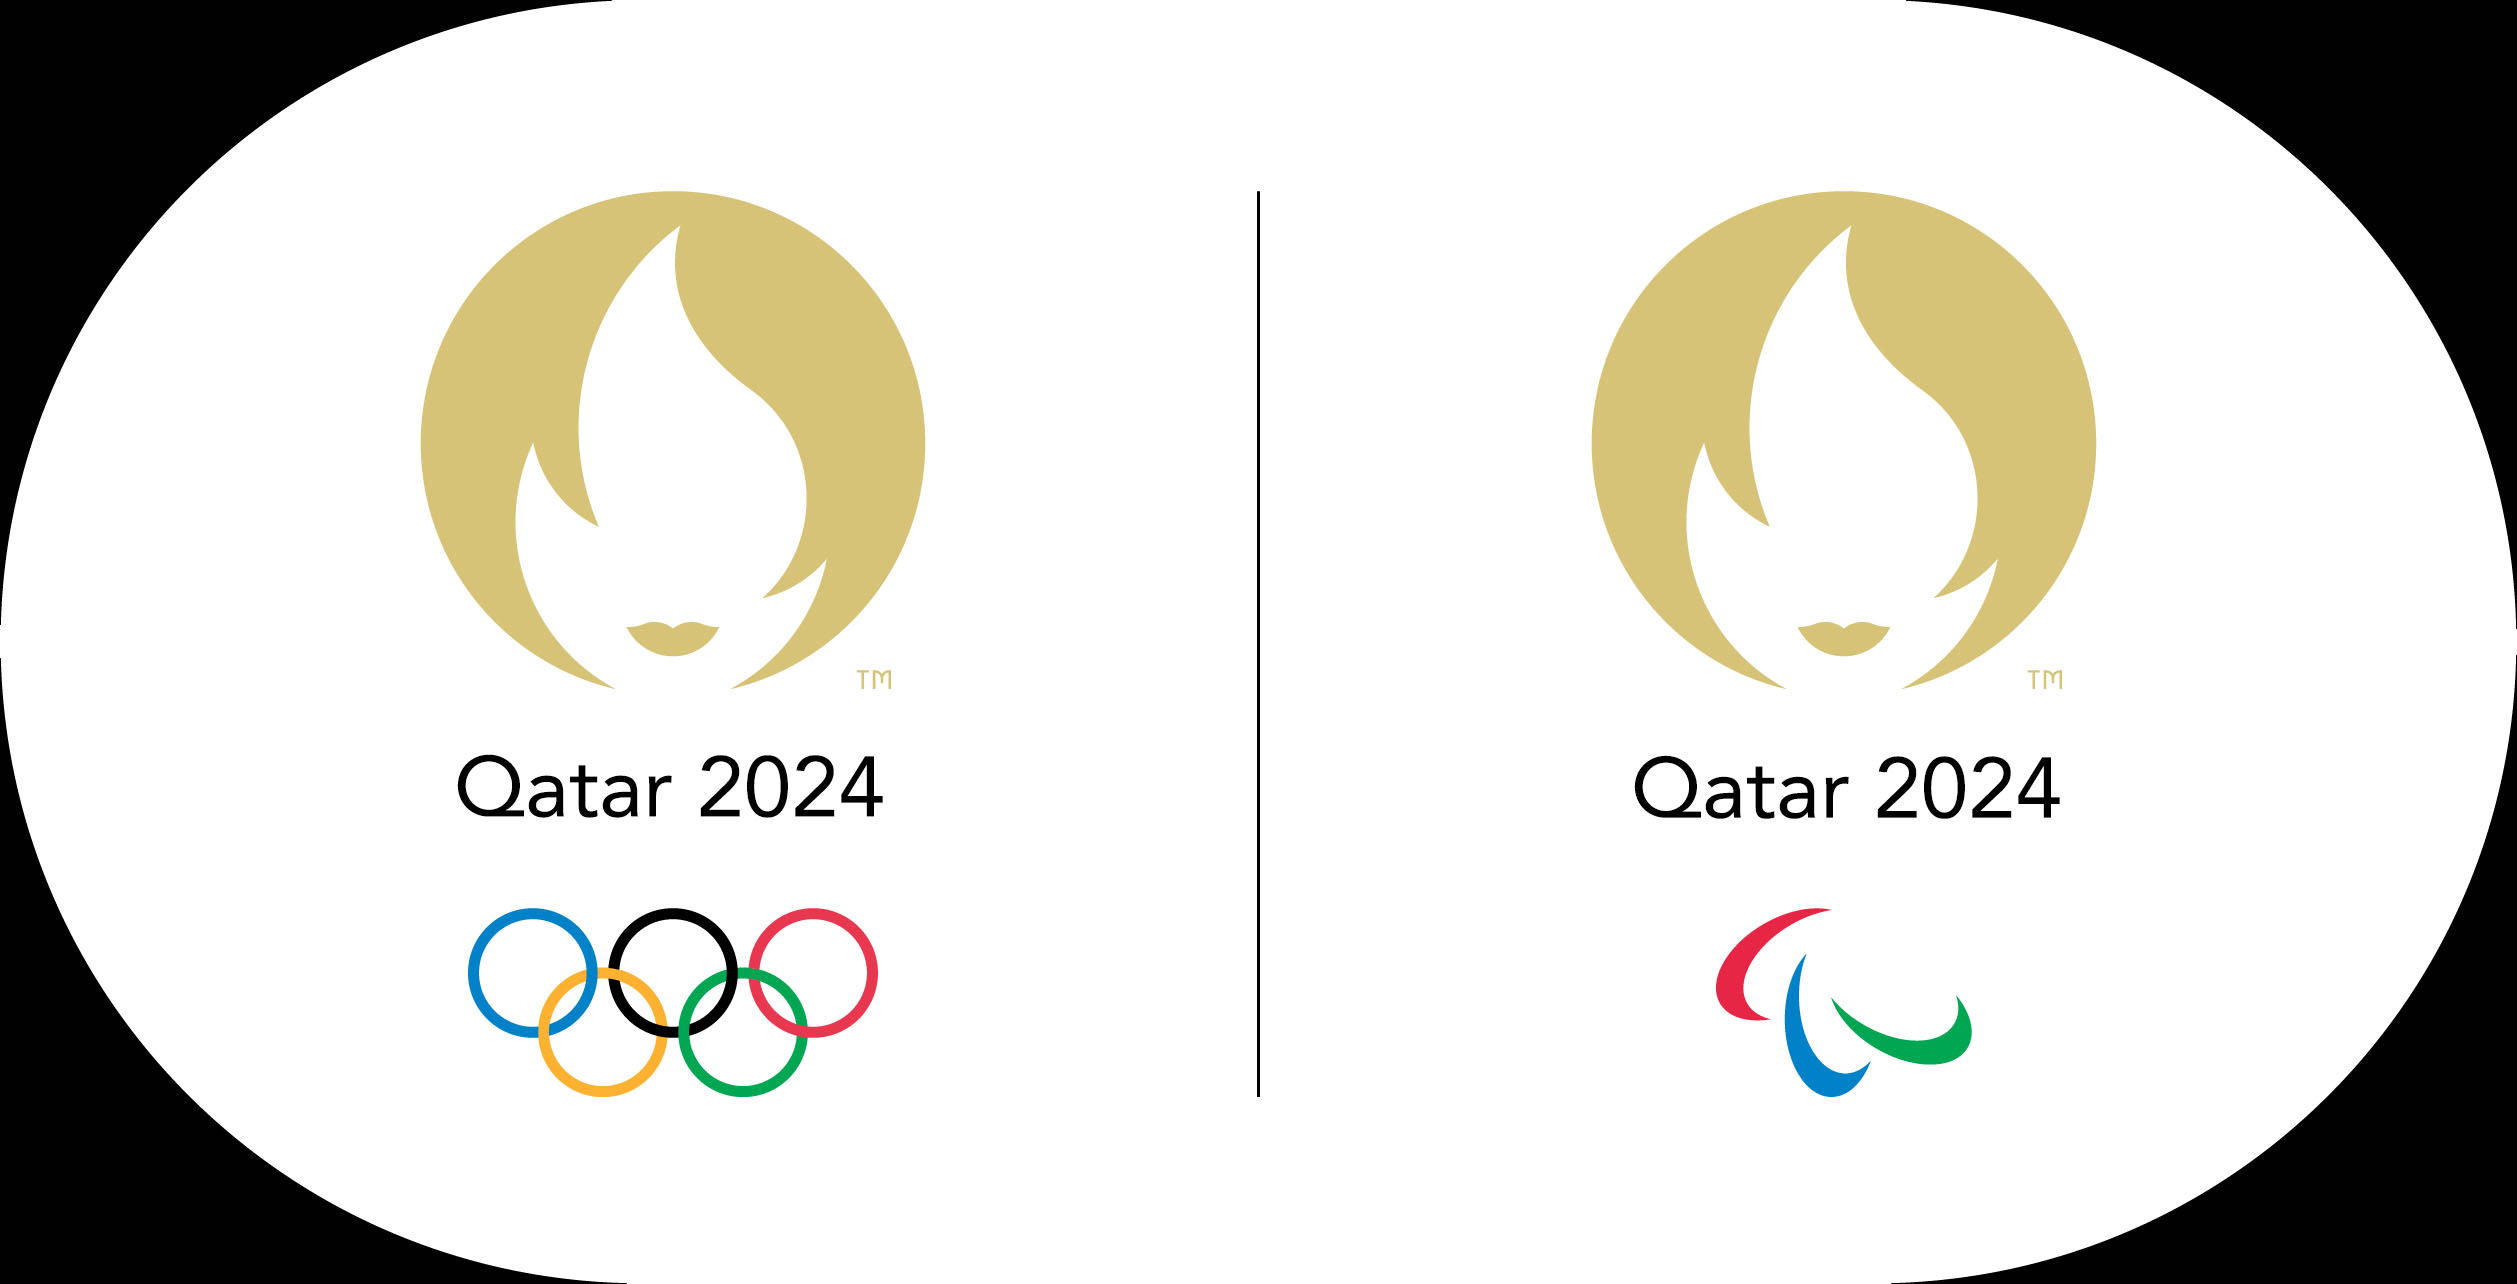 Les logos des Jeux olympiques et paralympiques de Qatar 2024.